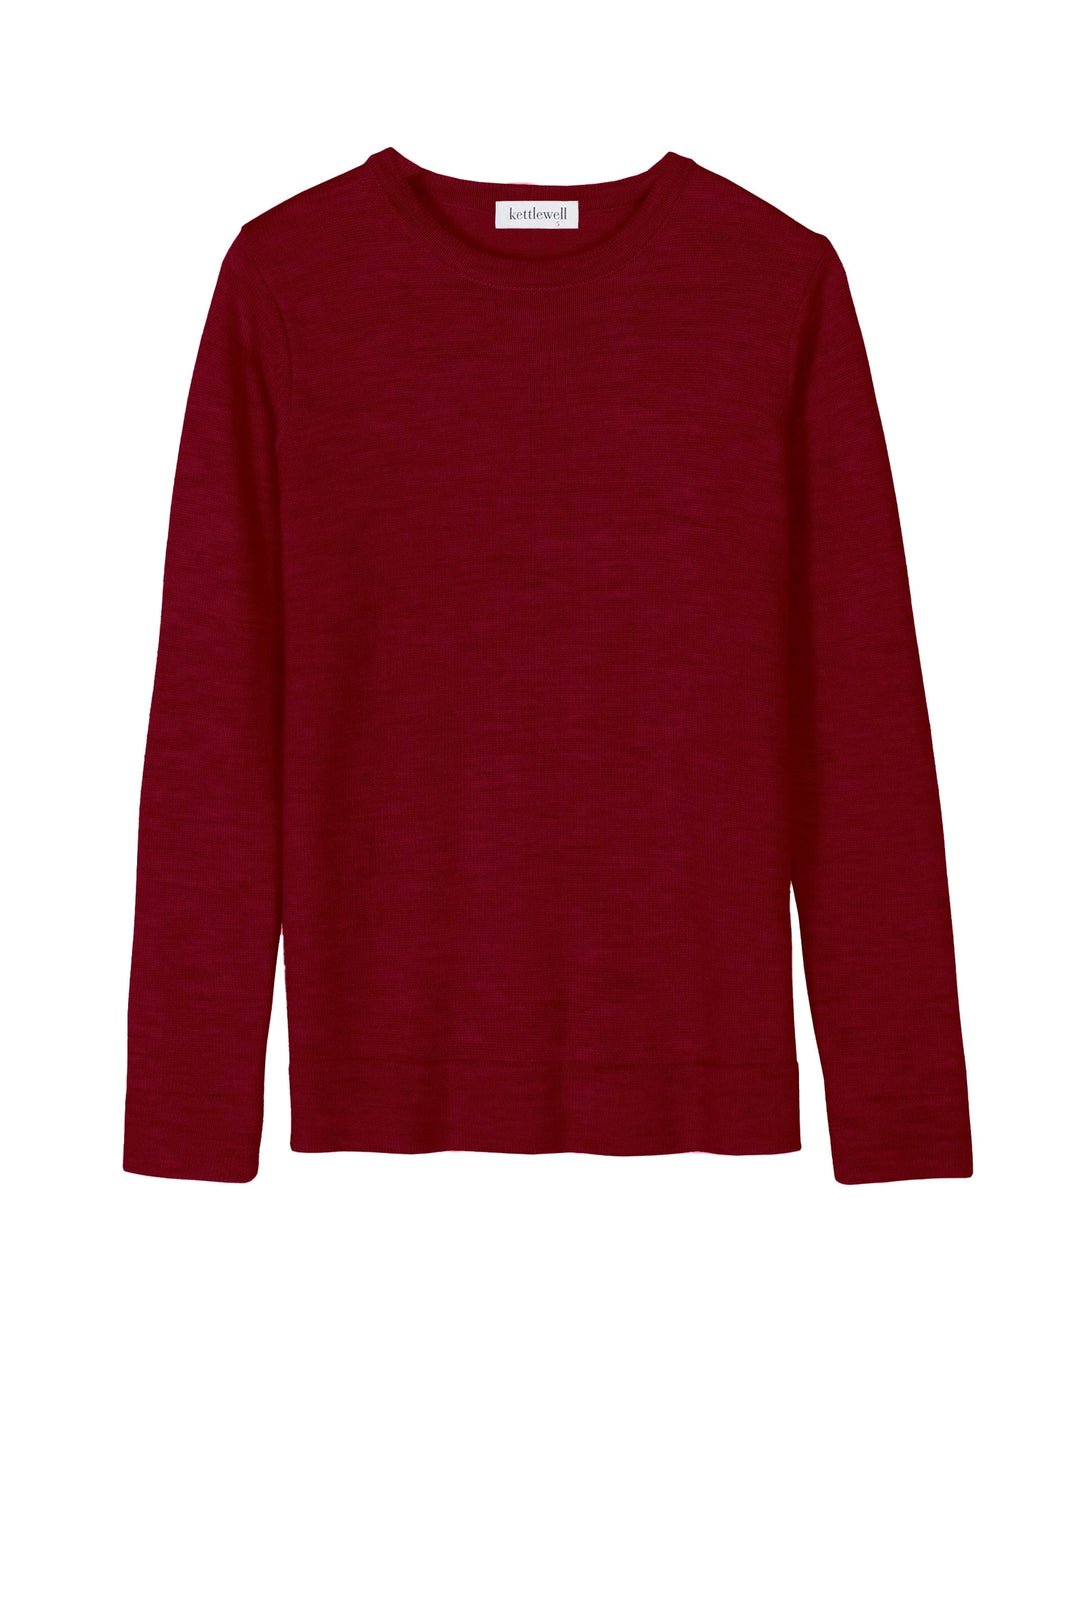 Kettlewell Merino Sweater - Rumba Red